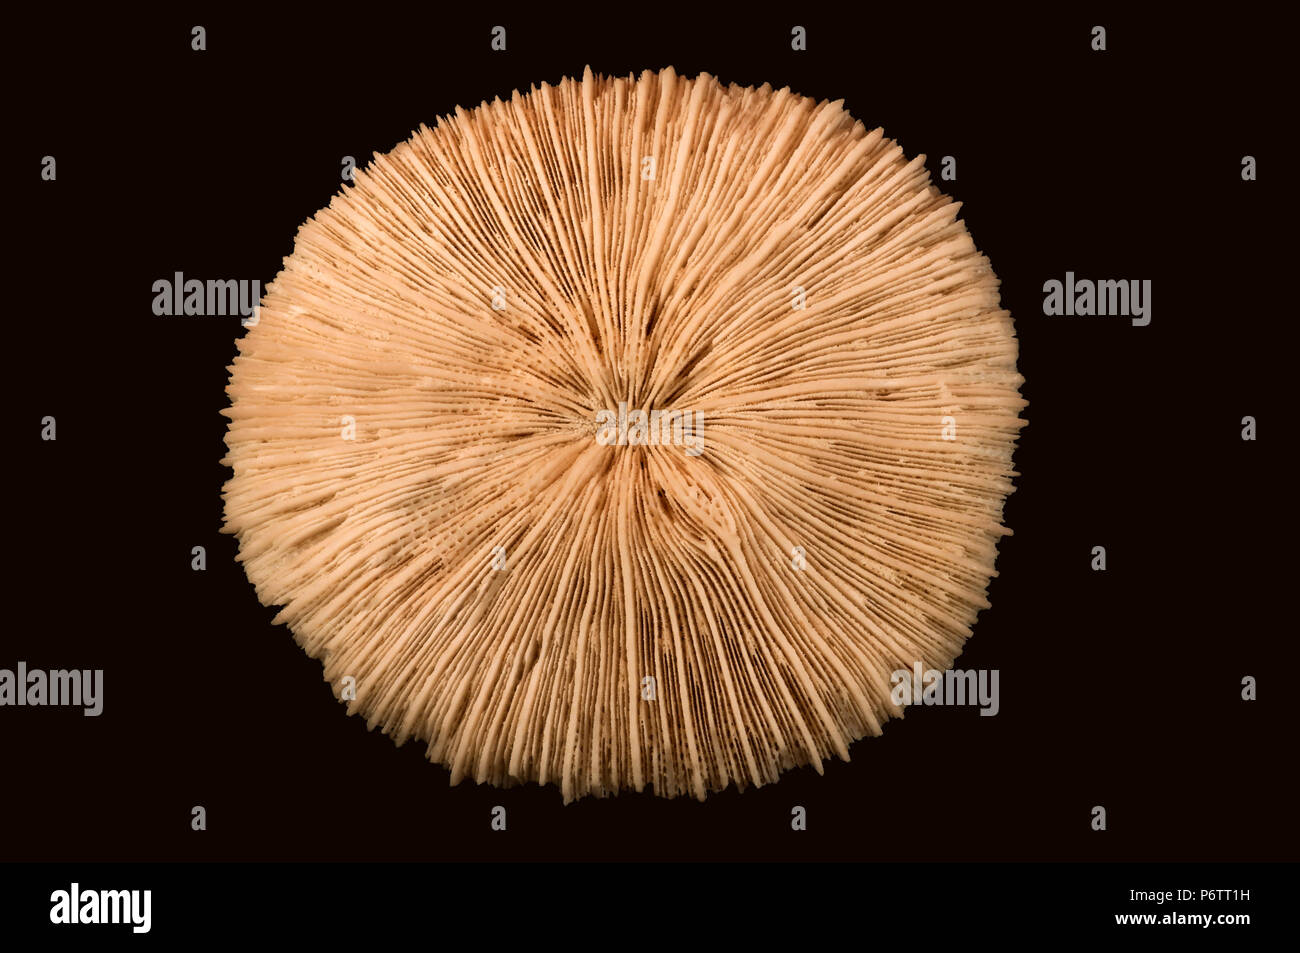 Squelette de corail Fungia sp. Disque pédale - Septum (parois radiales calcifiées). Classe des Anthozoaires, embranchement des cnidaires, Anemone, Banque D'Images